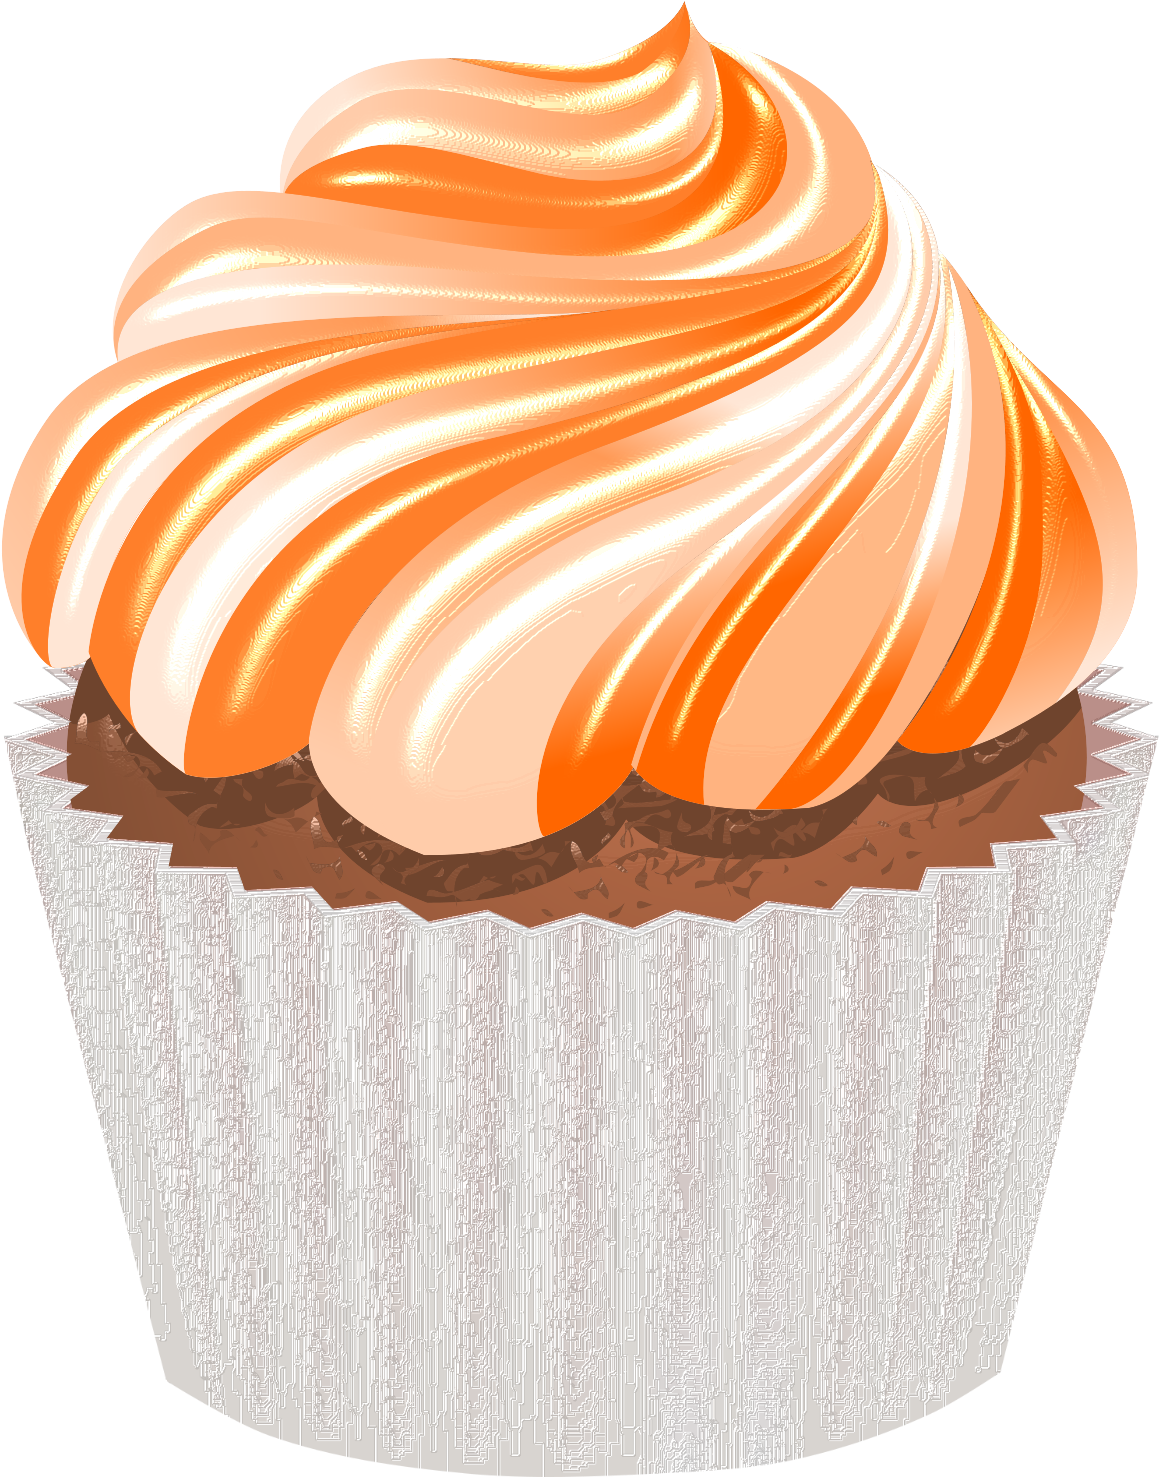 Cupcake clipart orange.